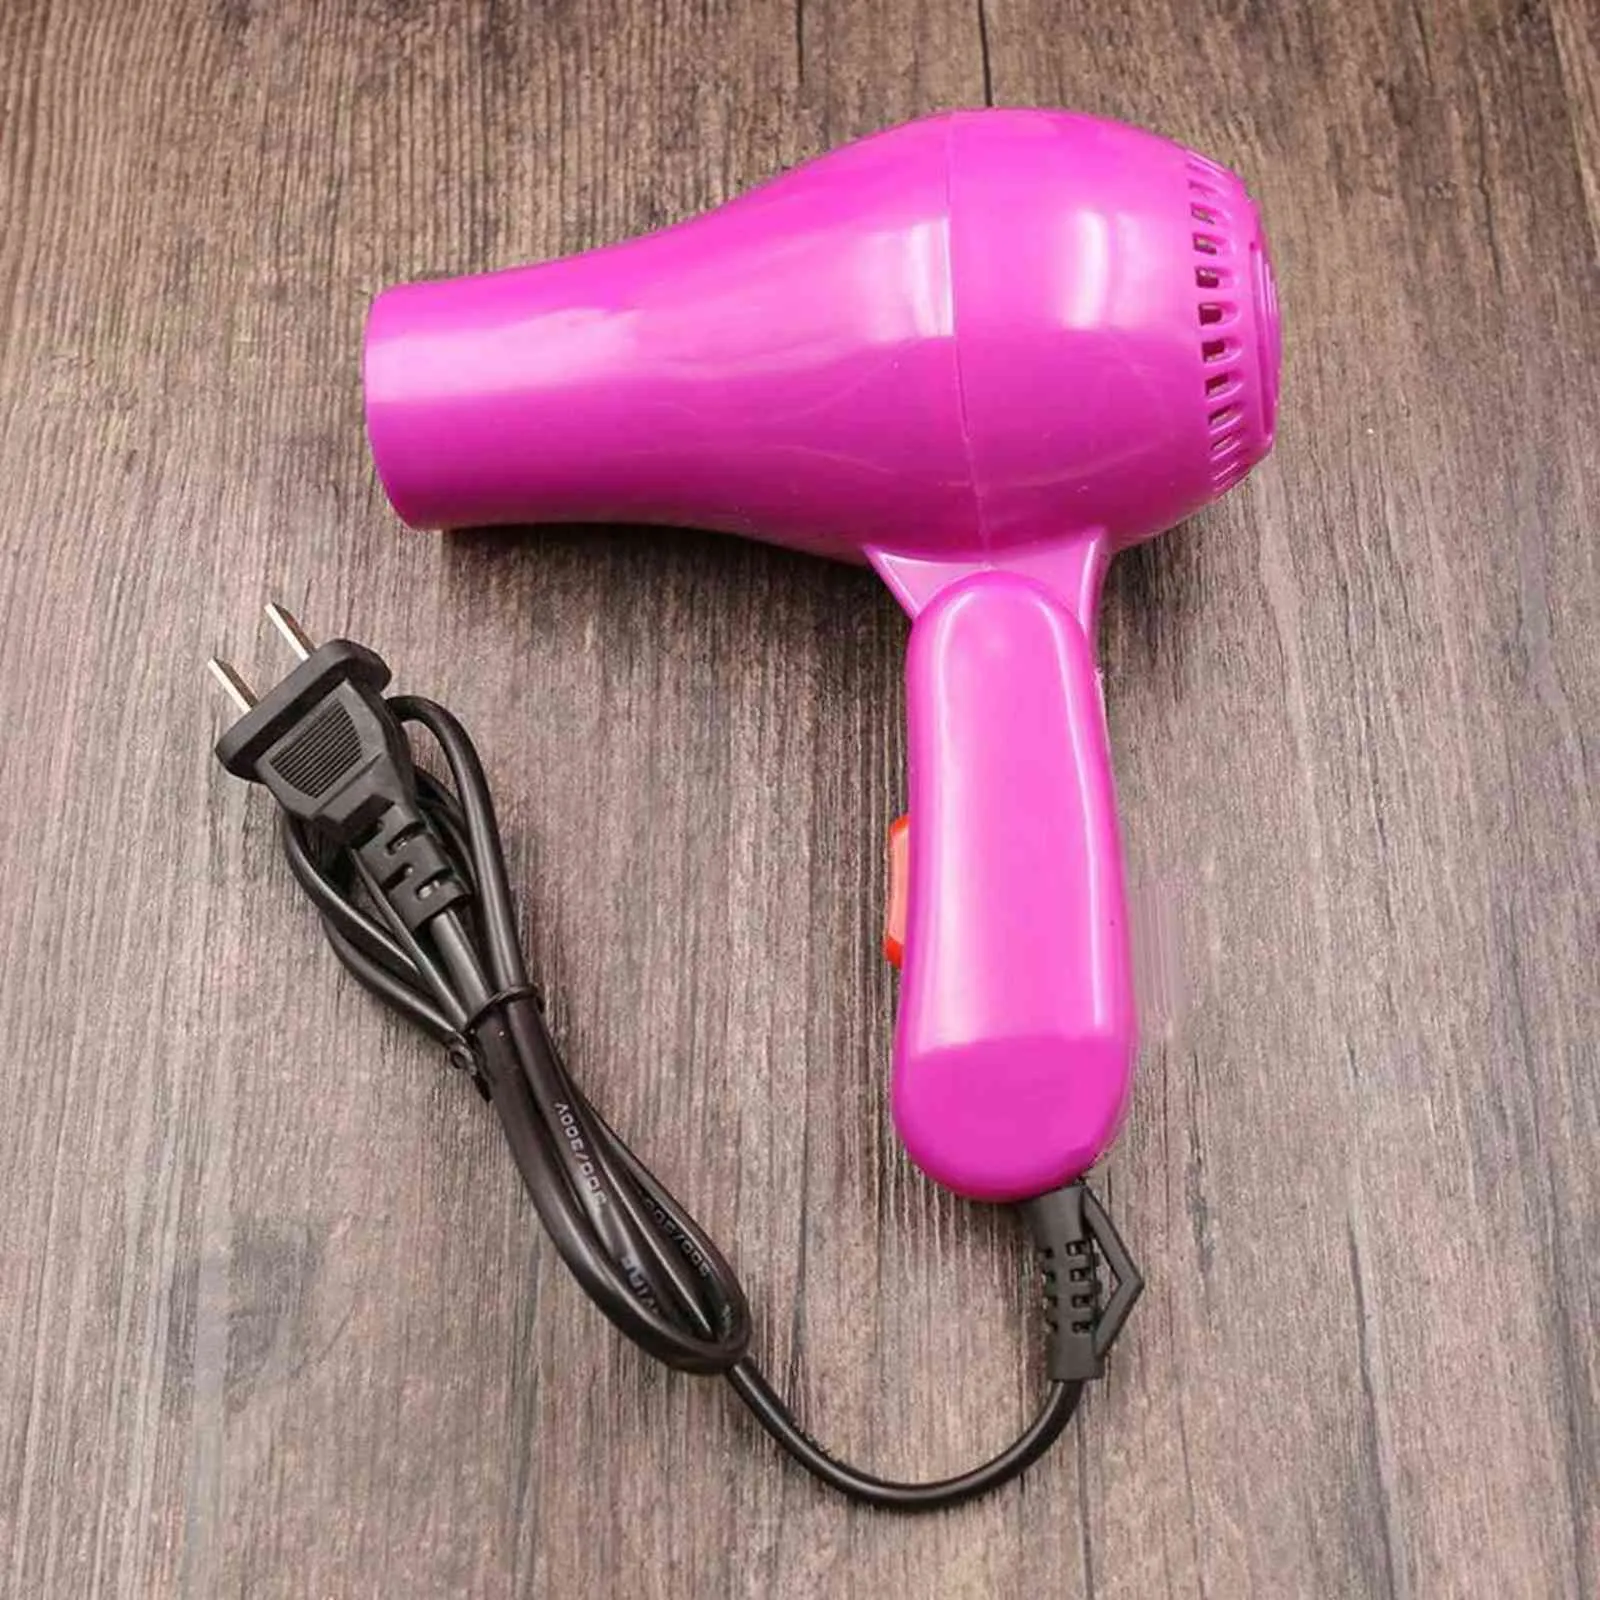 Mini profesional secador de cabello multifunción 220V Viajes plegables Hogar secador de cabello eléctrico para reducir el cabello frizz H1122249K